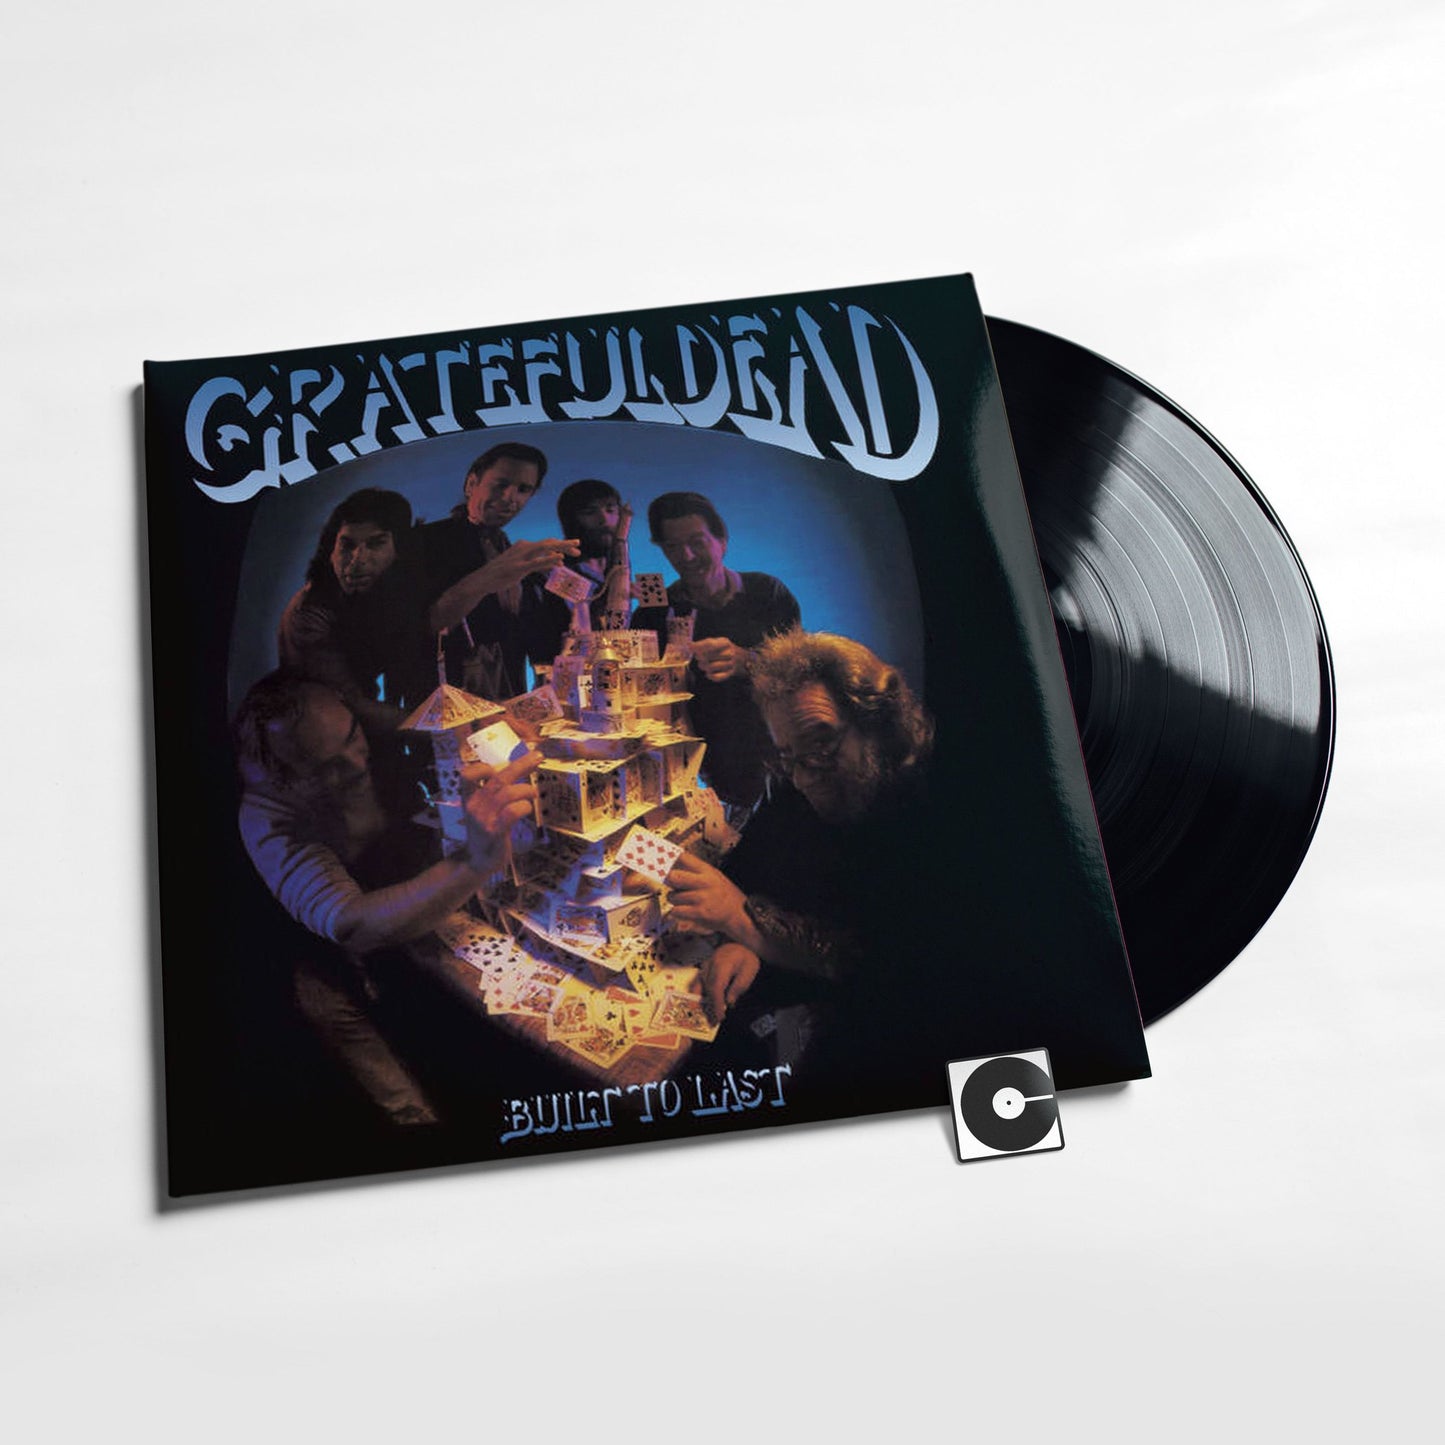 The Grateful Dead - "Built To Last"